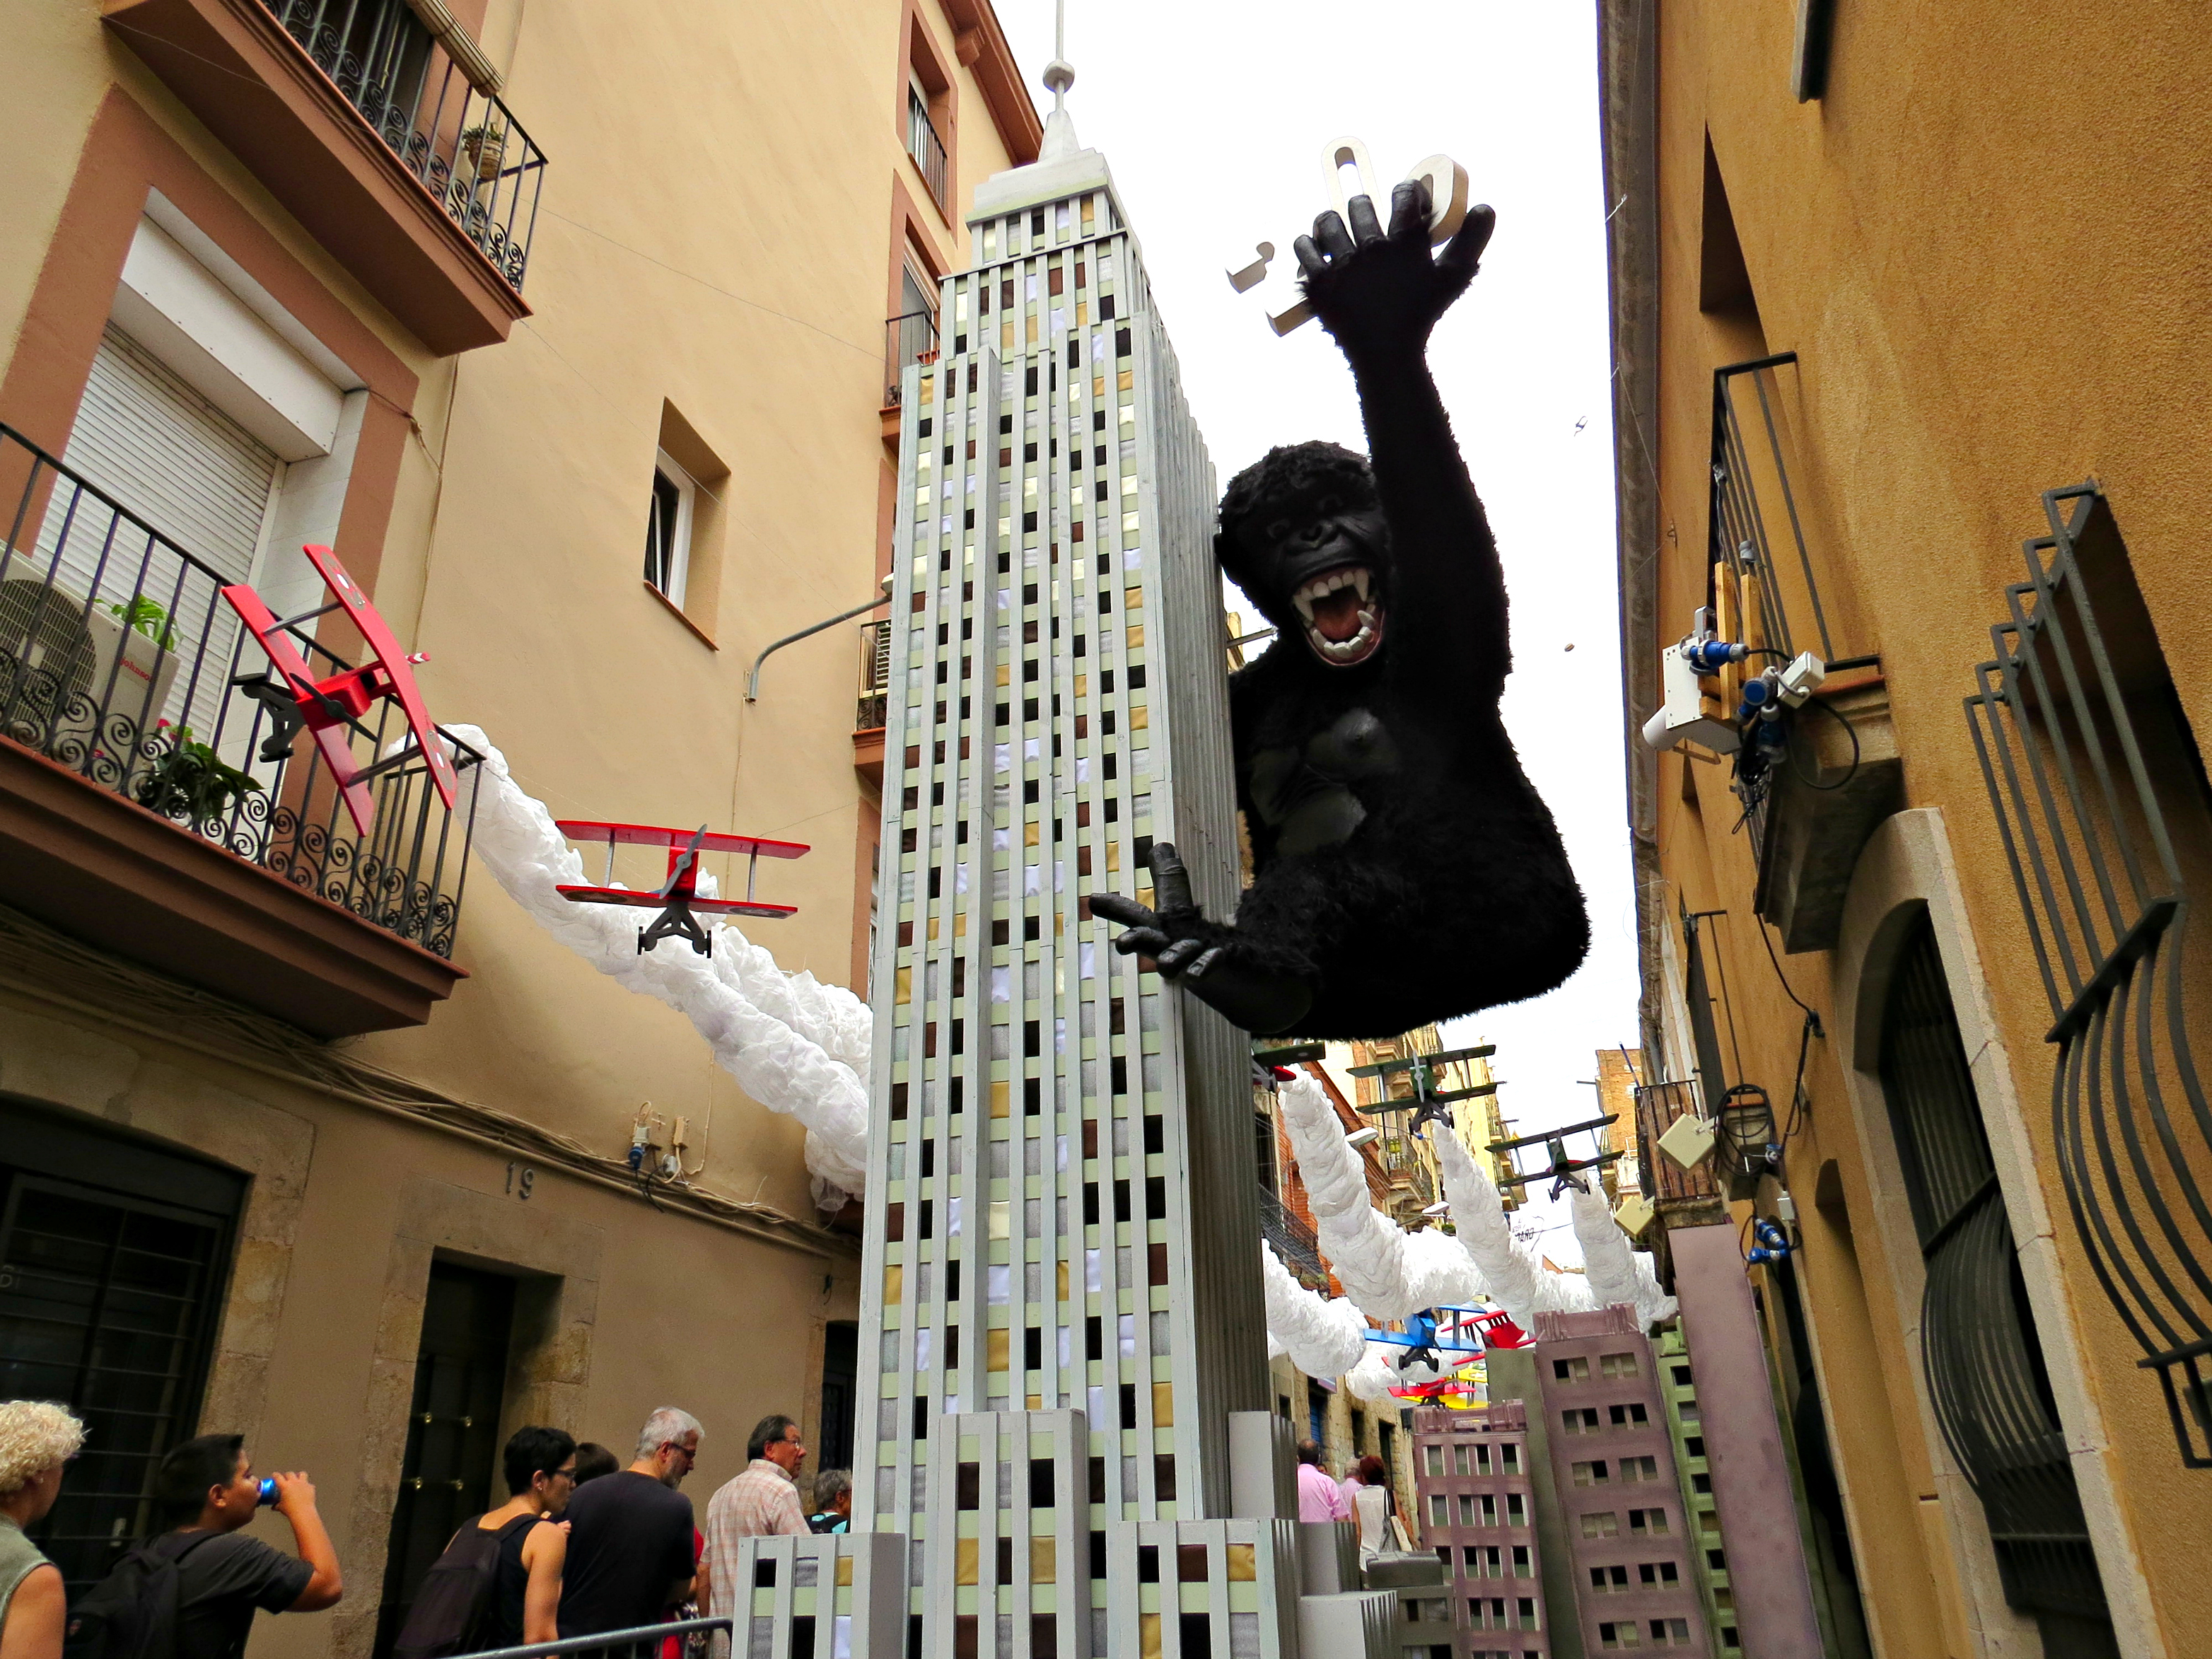 Gracia Barcelona - King Kong 1